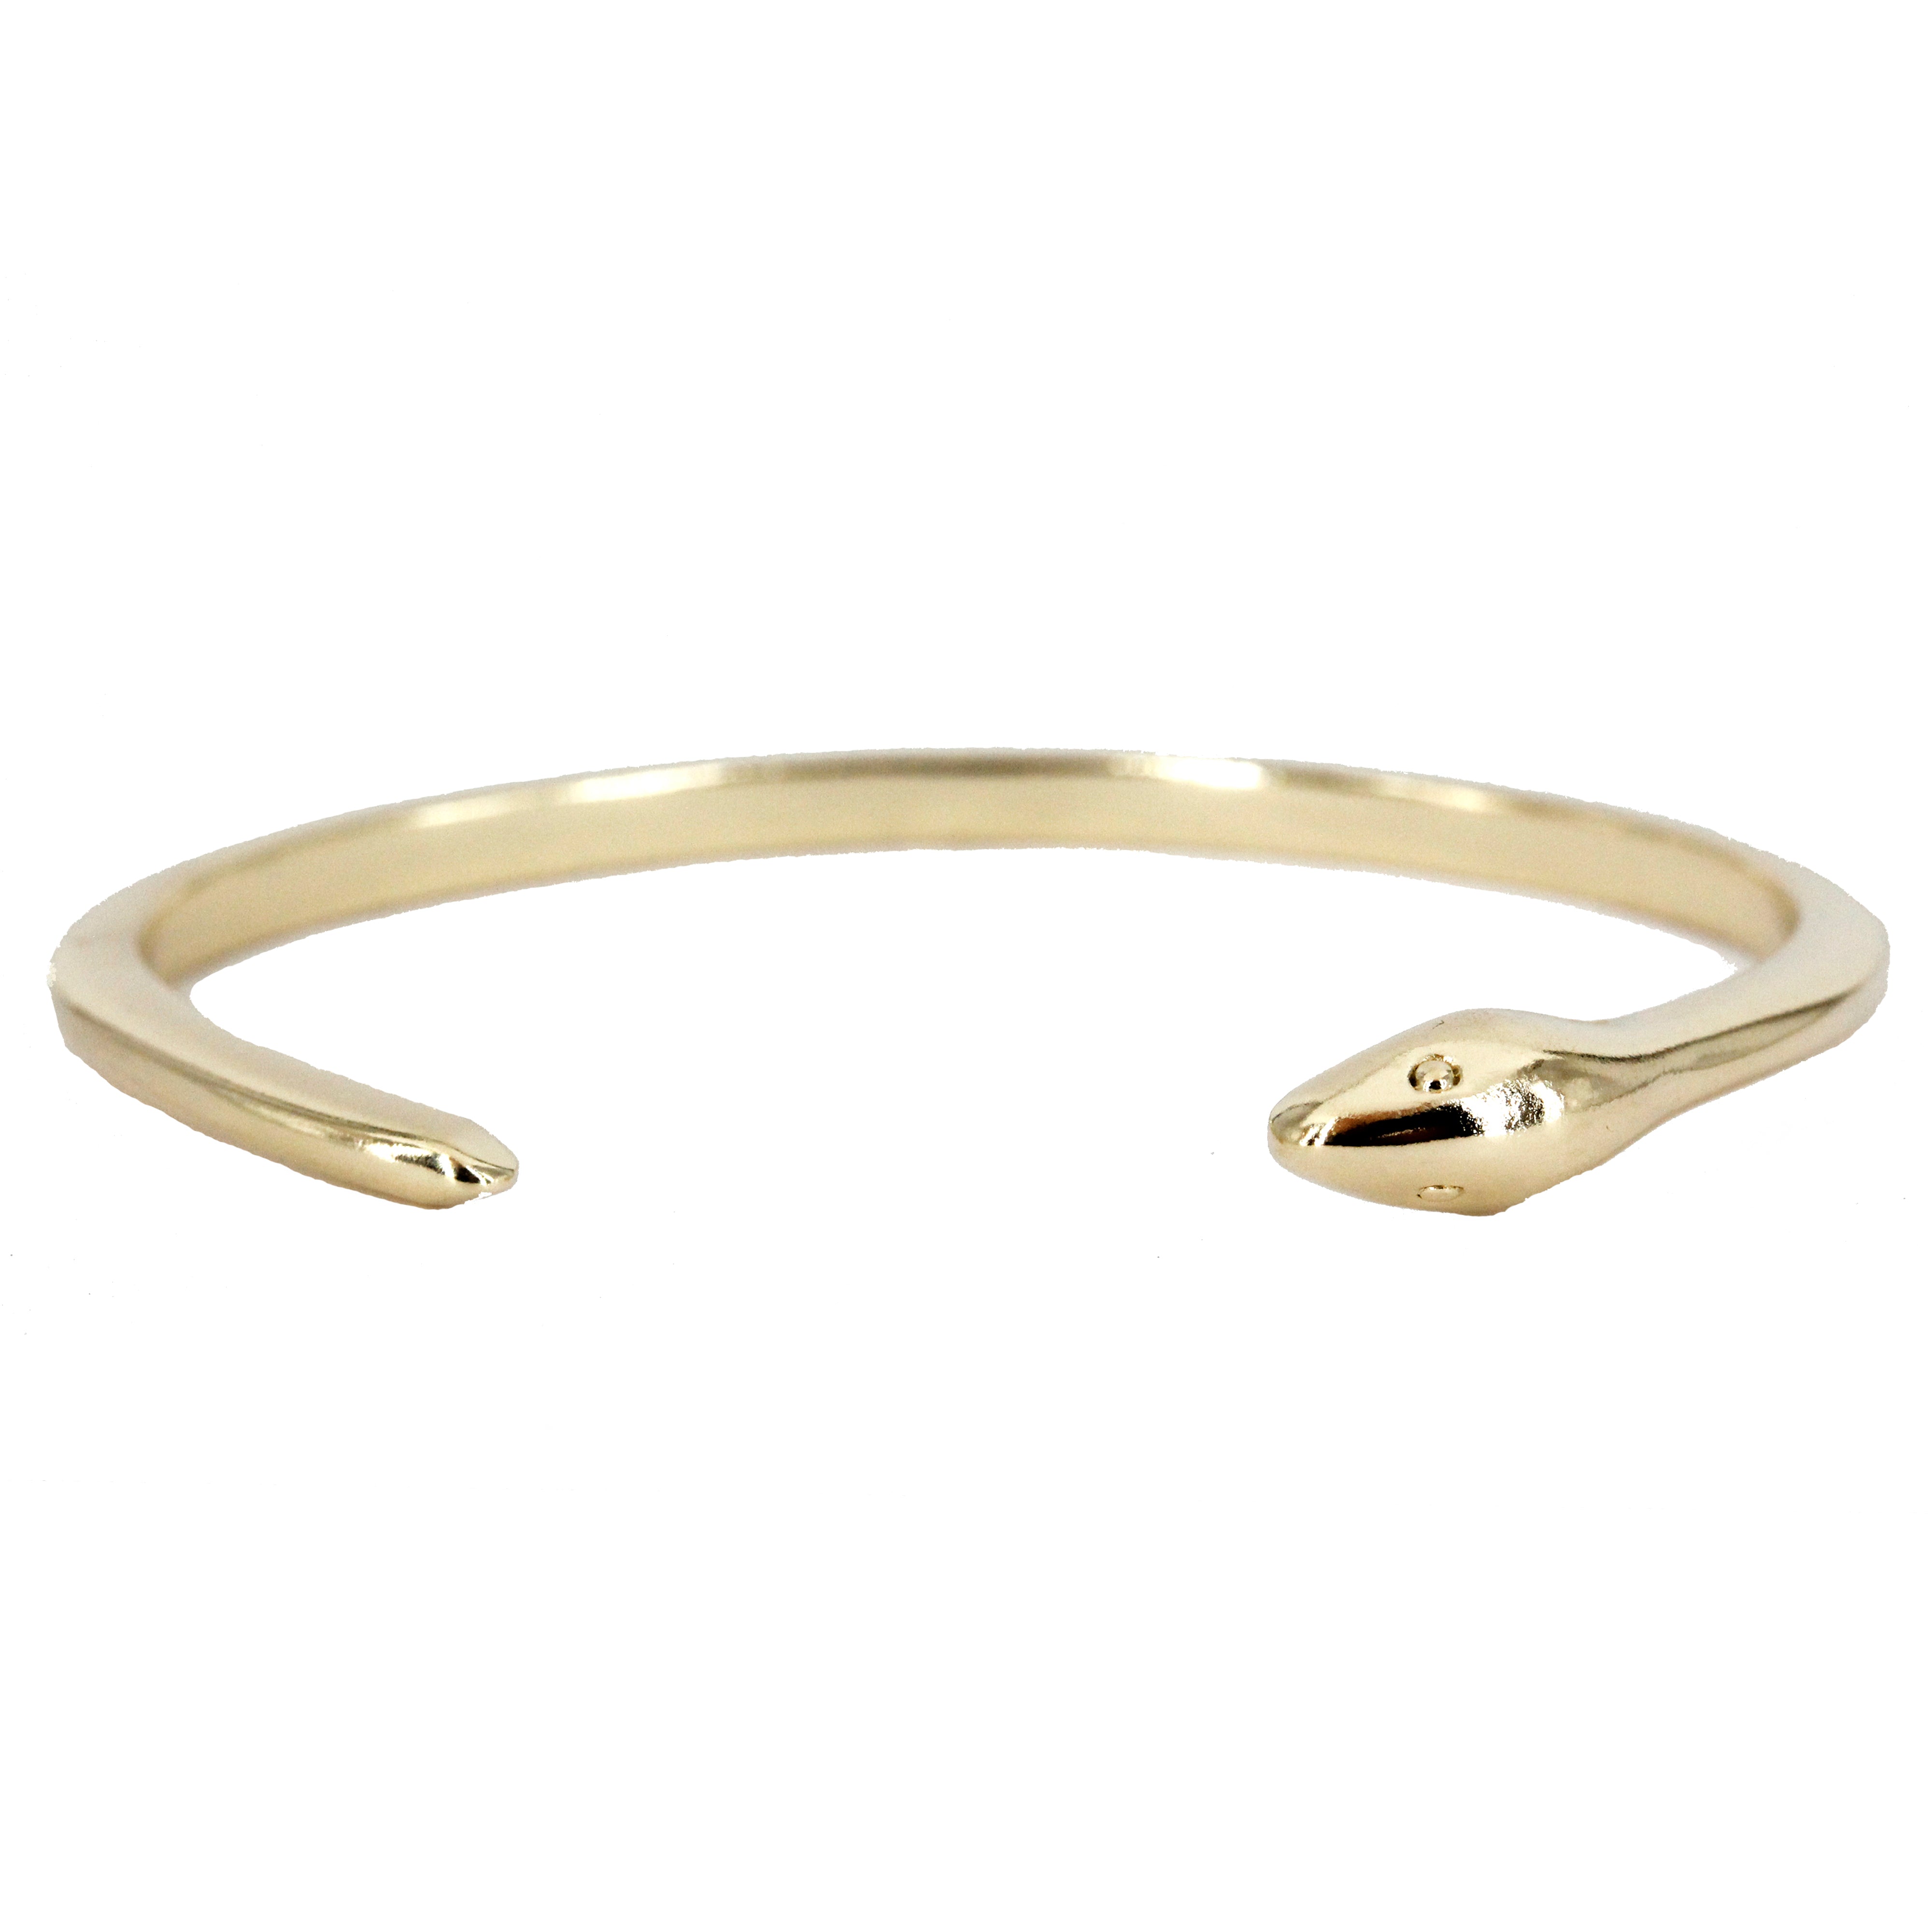 1PC 24k Gold Plated Snake Bracelets Gold Open Bangle Cuff Bracelet